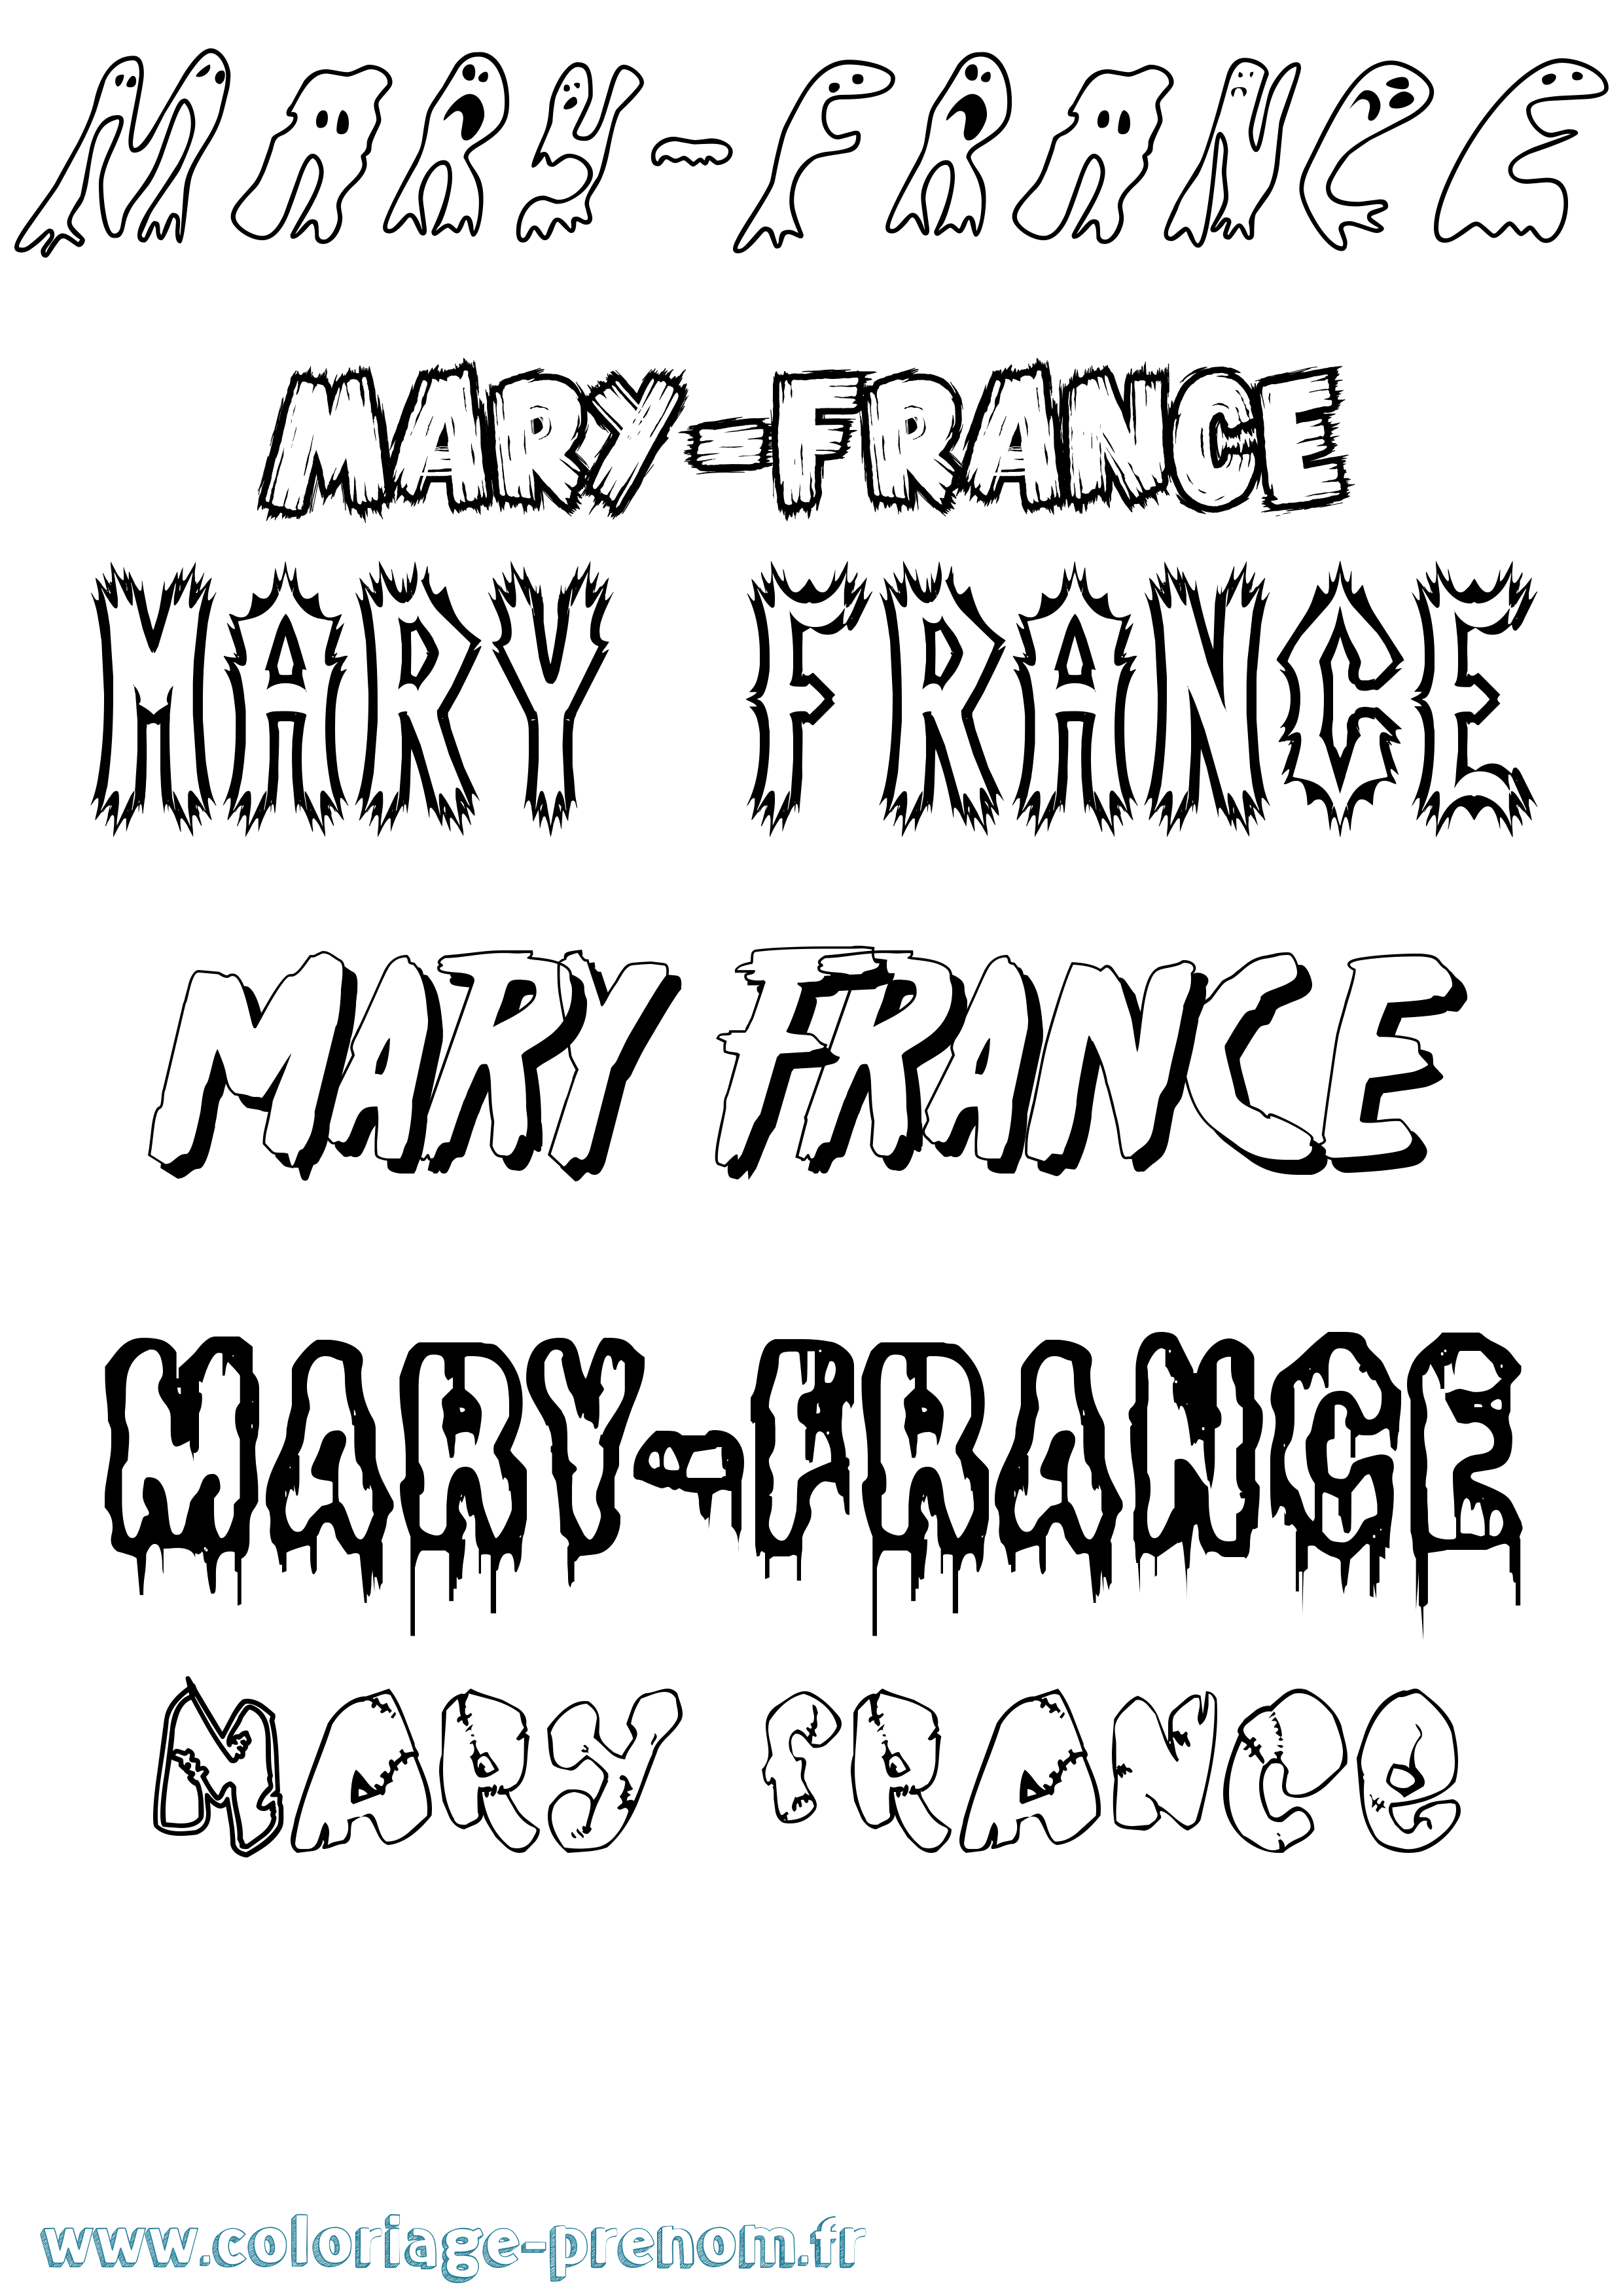 Coloriage prénom Mary-France Frisson